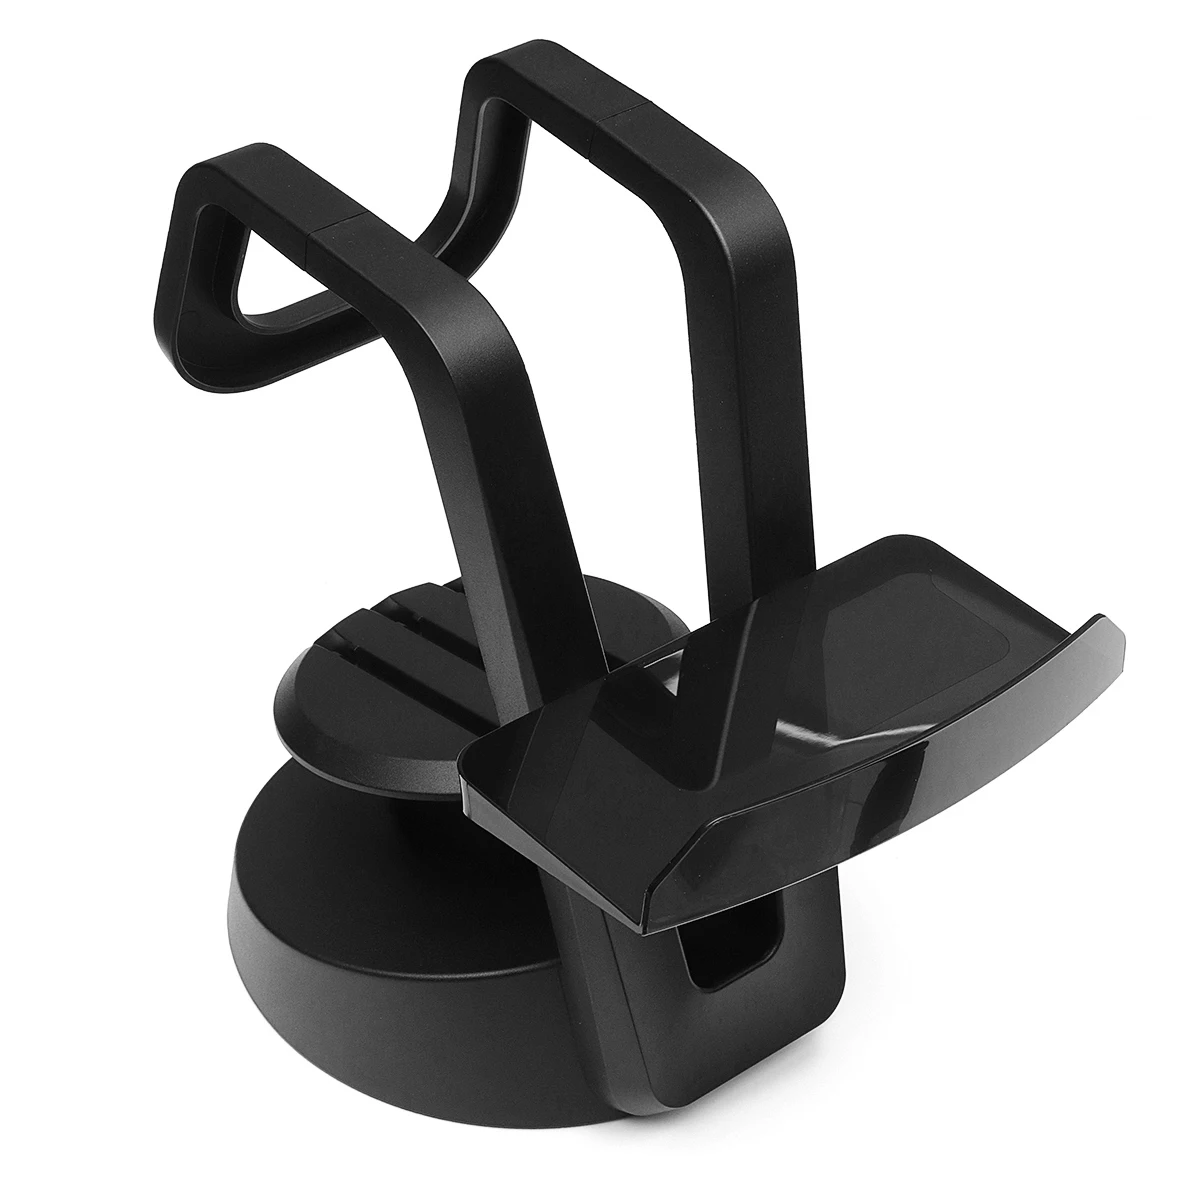 Cliate Универсальный держатель для гарнитуры VR Кабельный органайзер подставка держатель дисплей крепление для PS4 PSVR Rift для htc Vive шлем